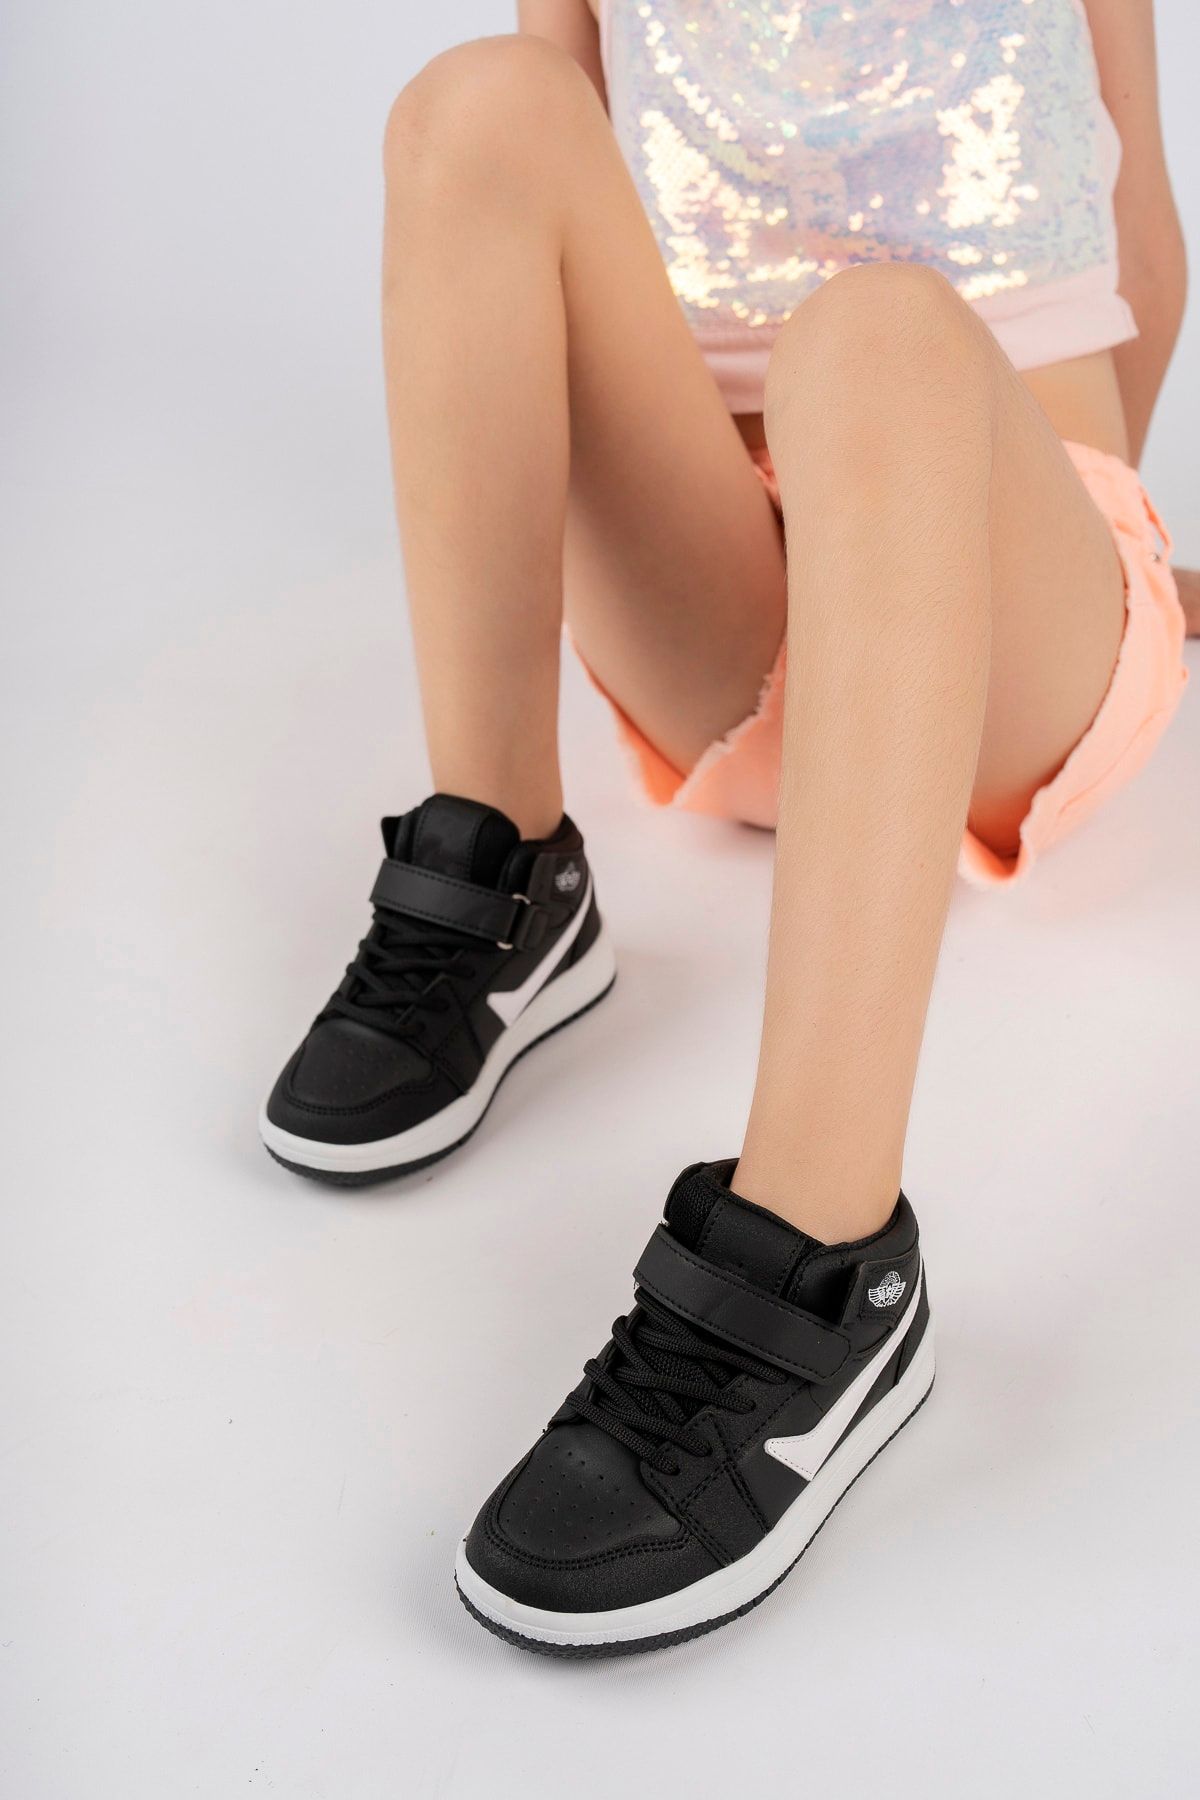 McDark Uzun Bilekli Unisex Siyah Çocuk Spor Sneaker Ayakkabı